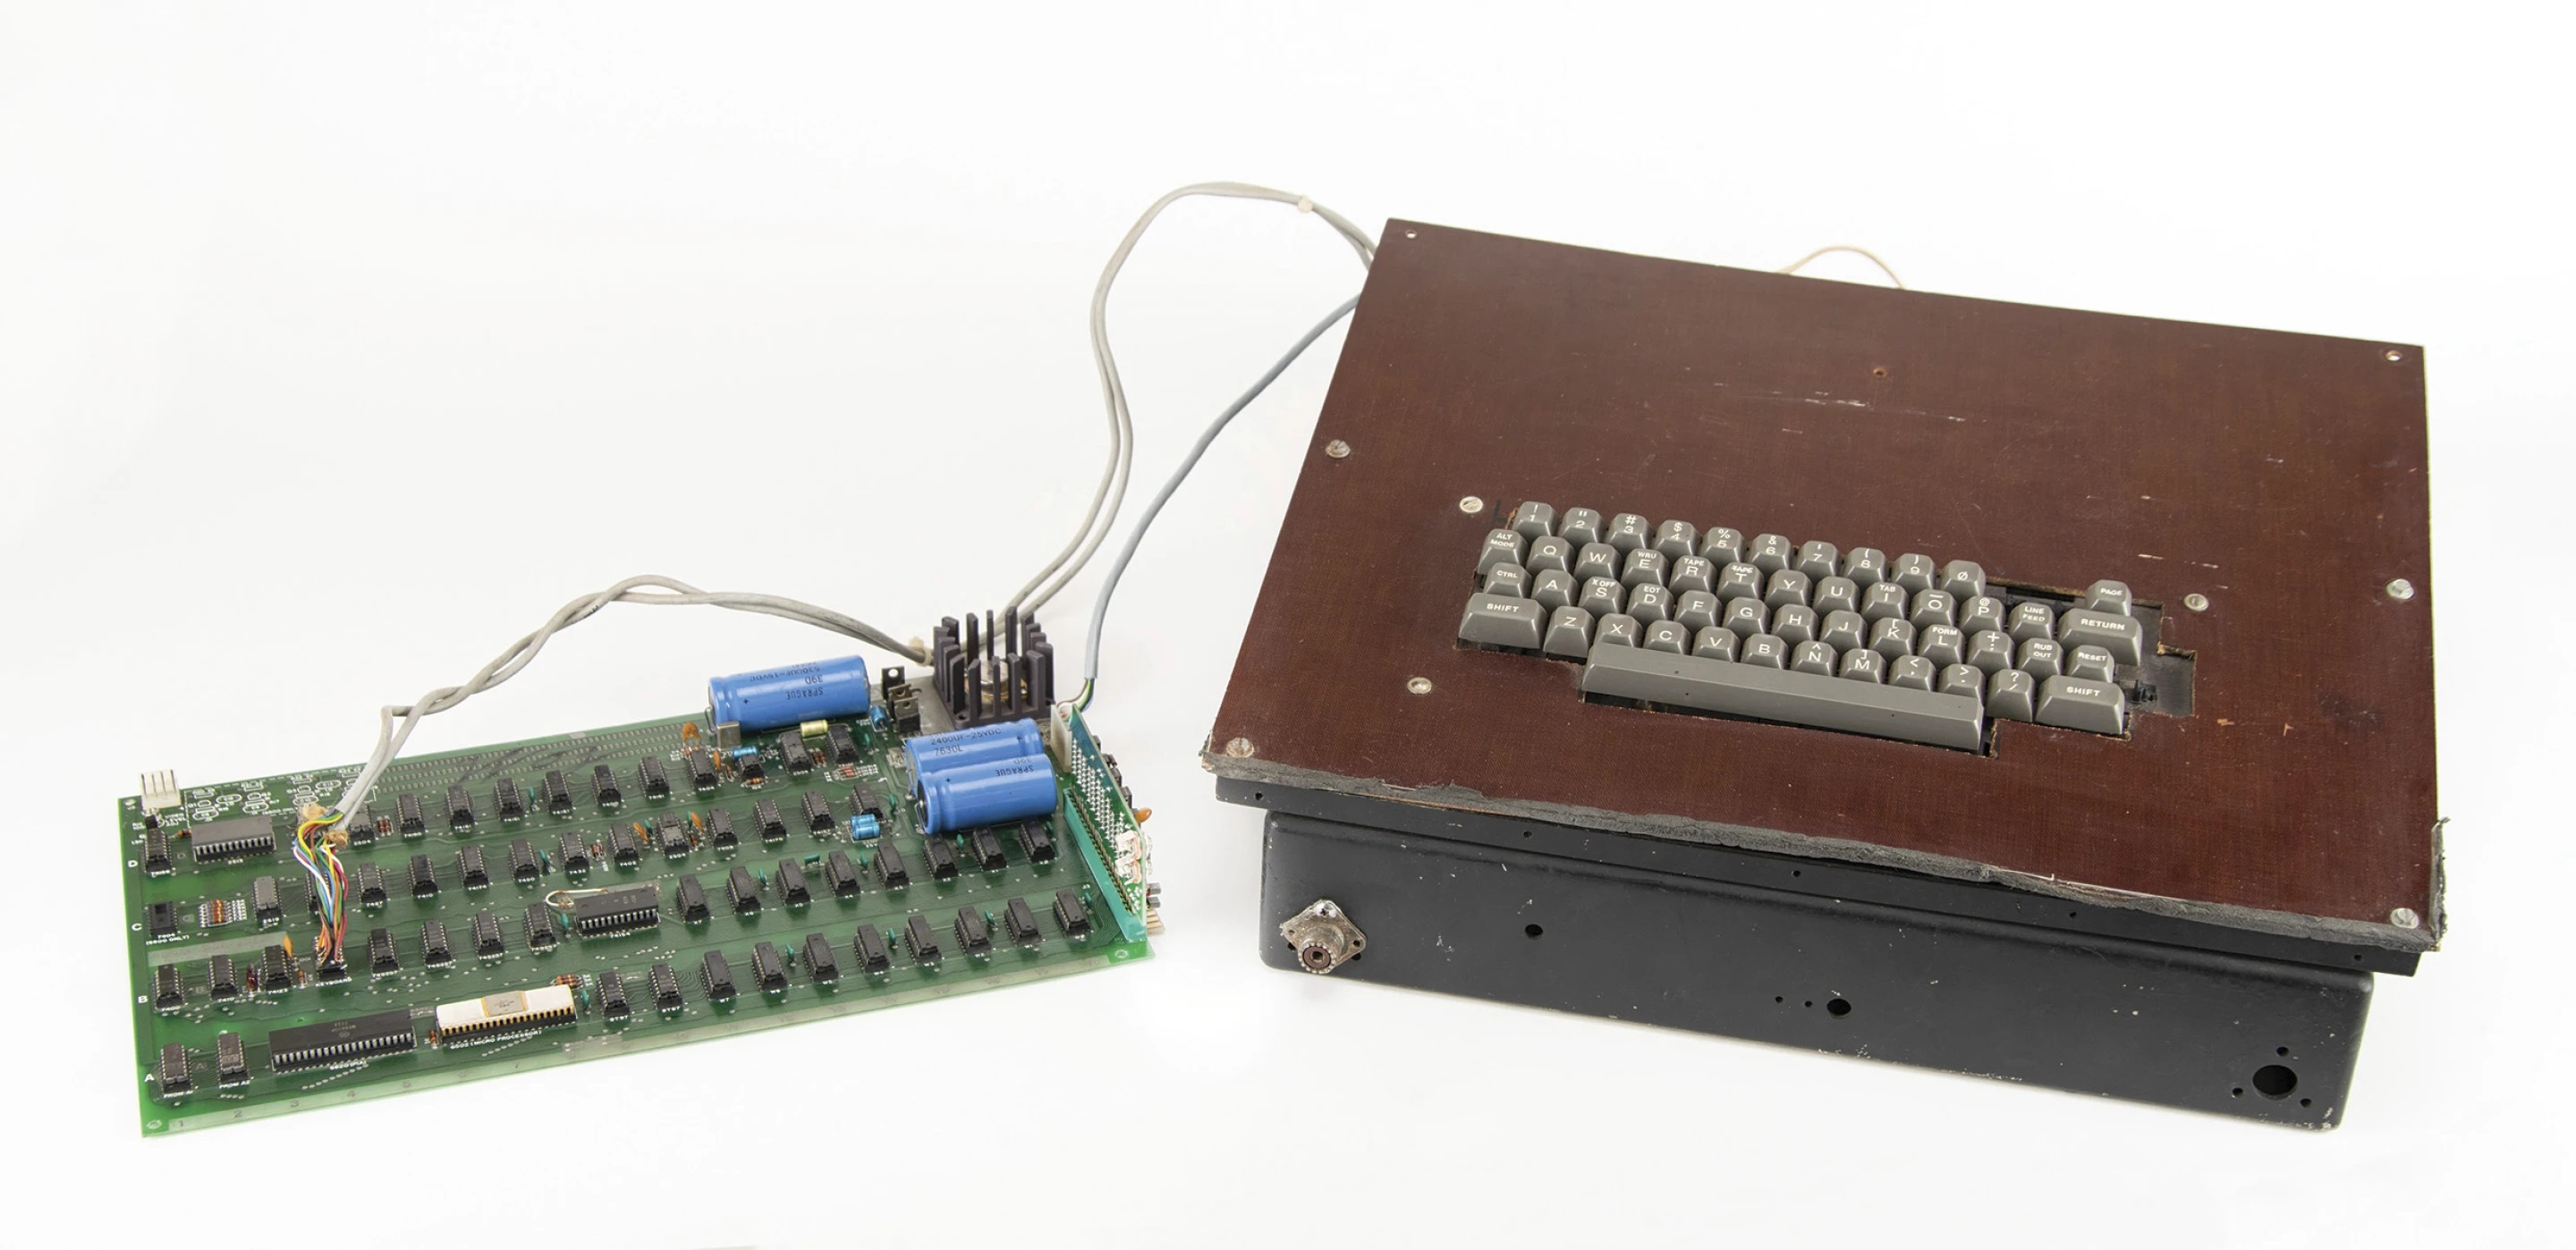 Перший комп'ютер Apple, випущений у 70-х роках, продається на аукціоні - його планують продати за $200 тисяч